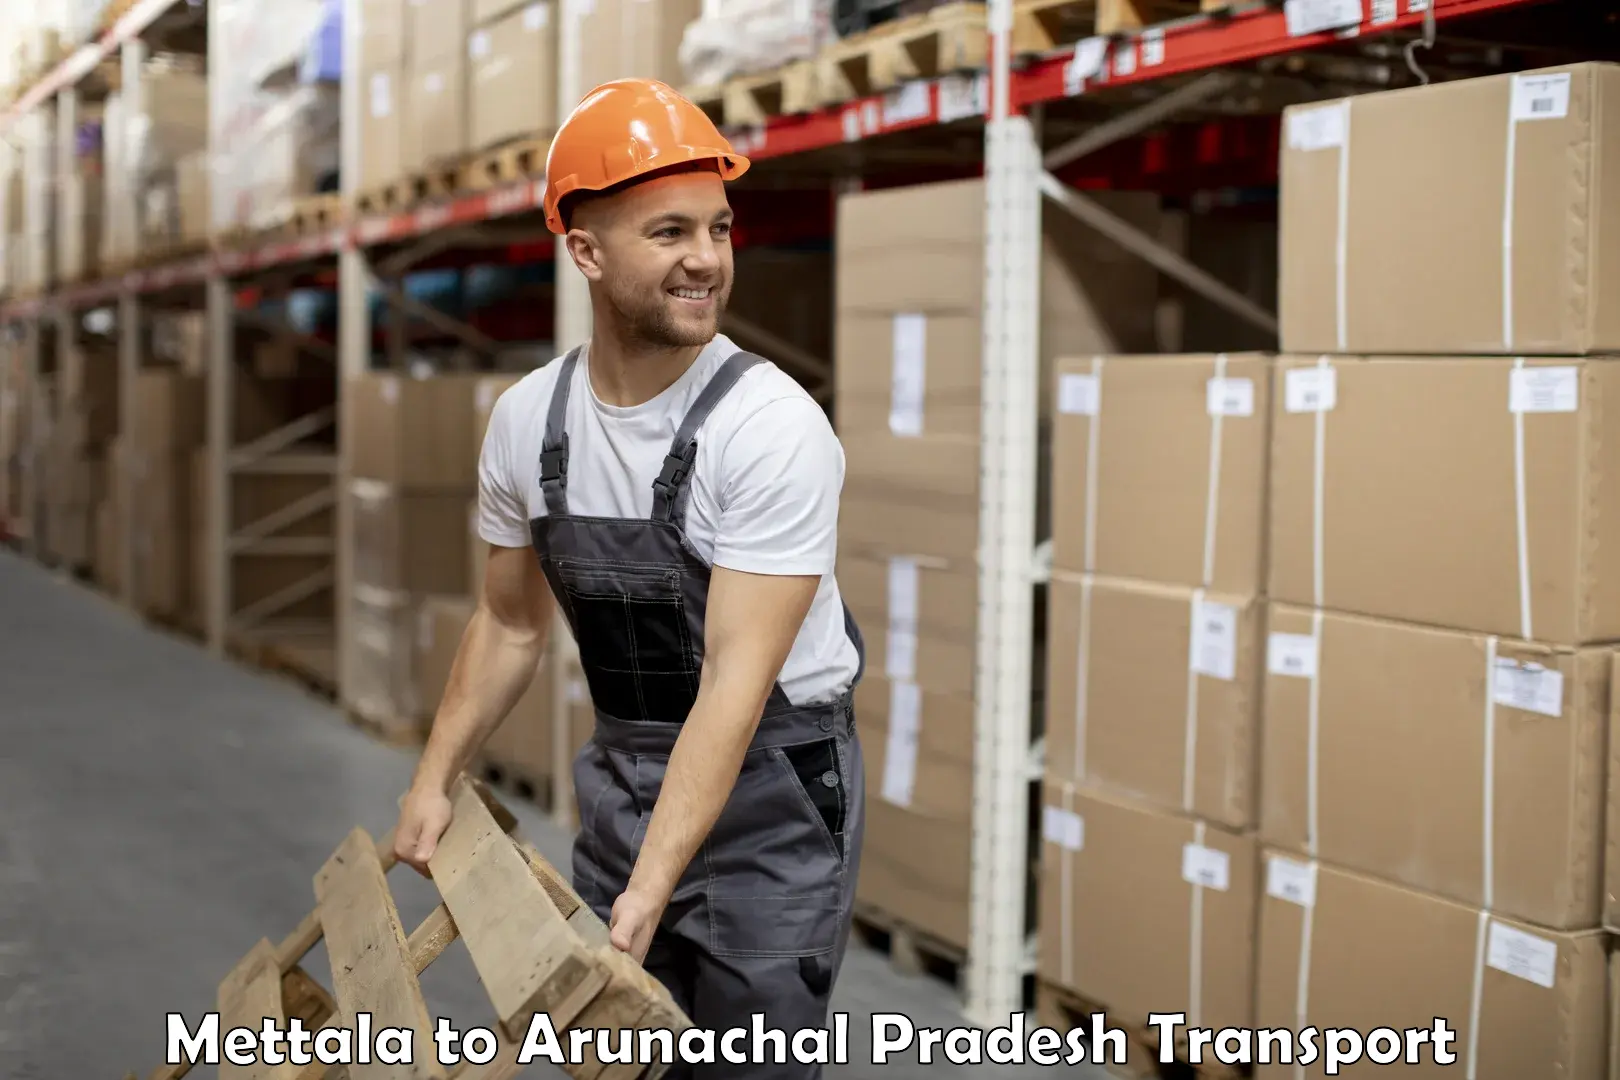 Daily parcel service transport Mettala to Arunachal Pradesh